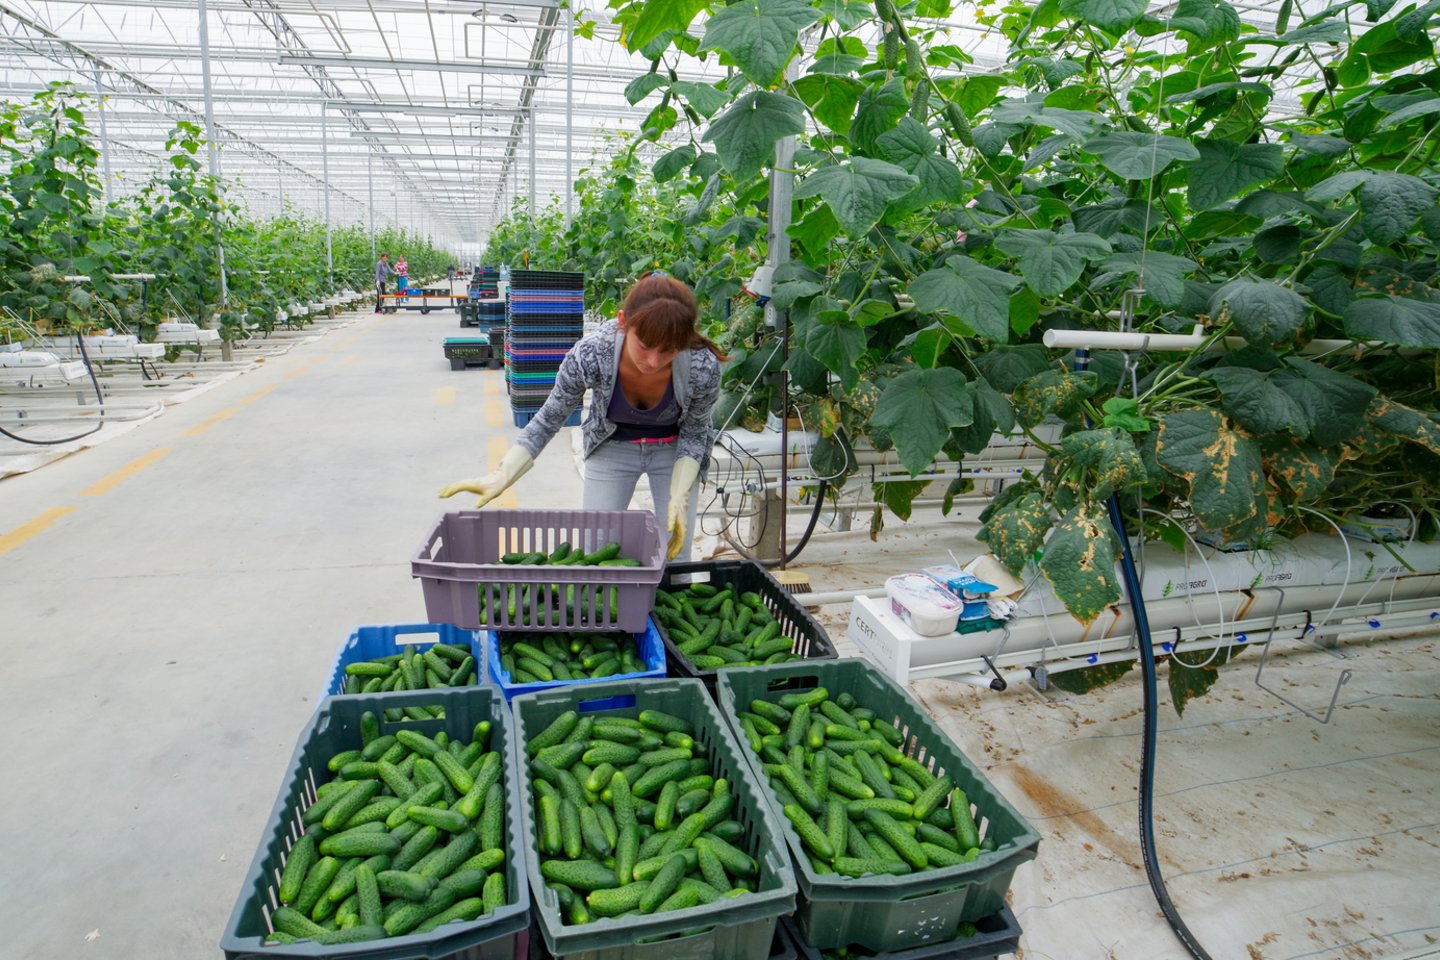  Trumpavaisiai agurkai iš lietuviškų šiltnamių jau pasiekė parduotuves.  <br> V.Ščiavinsko nuotr. 